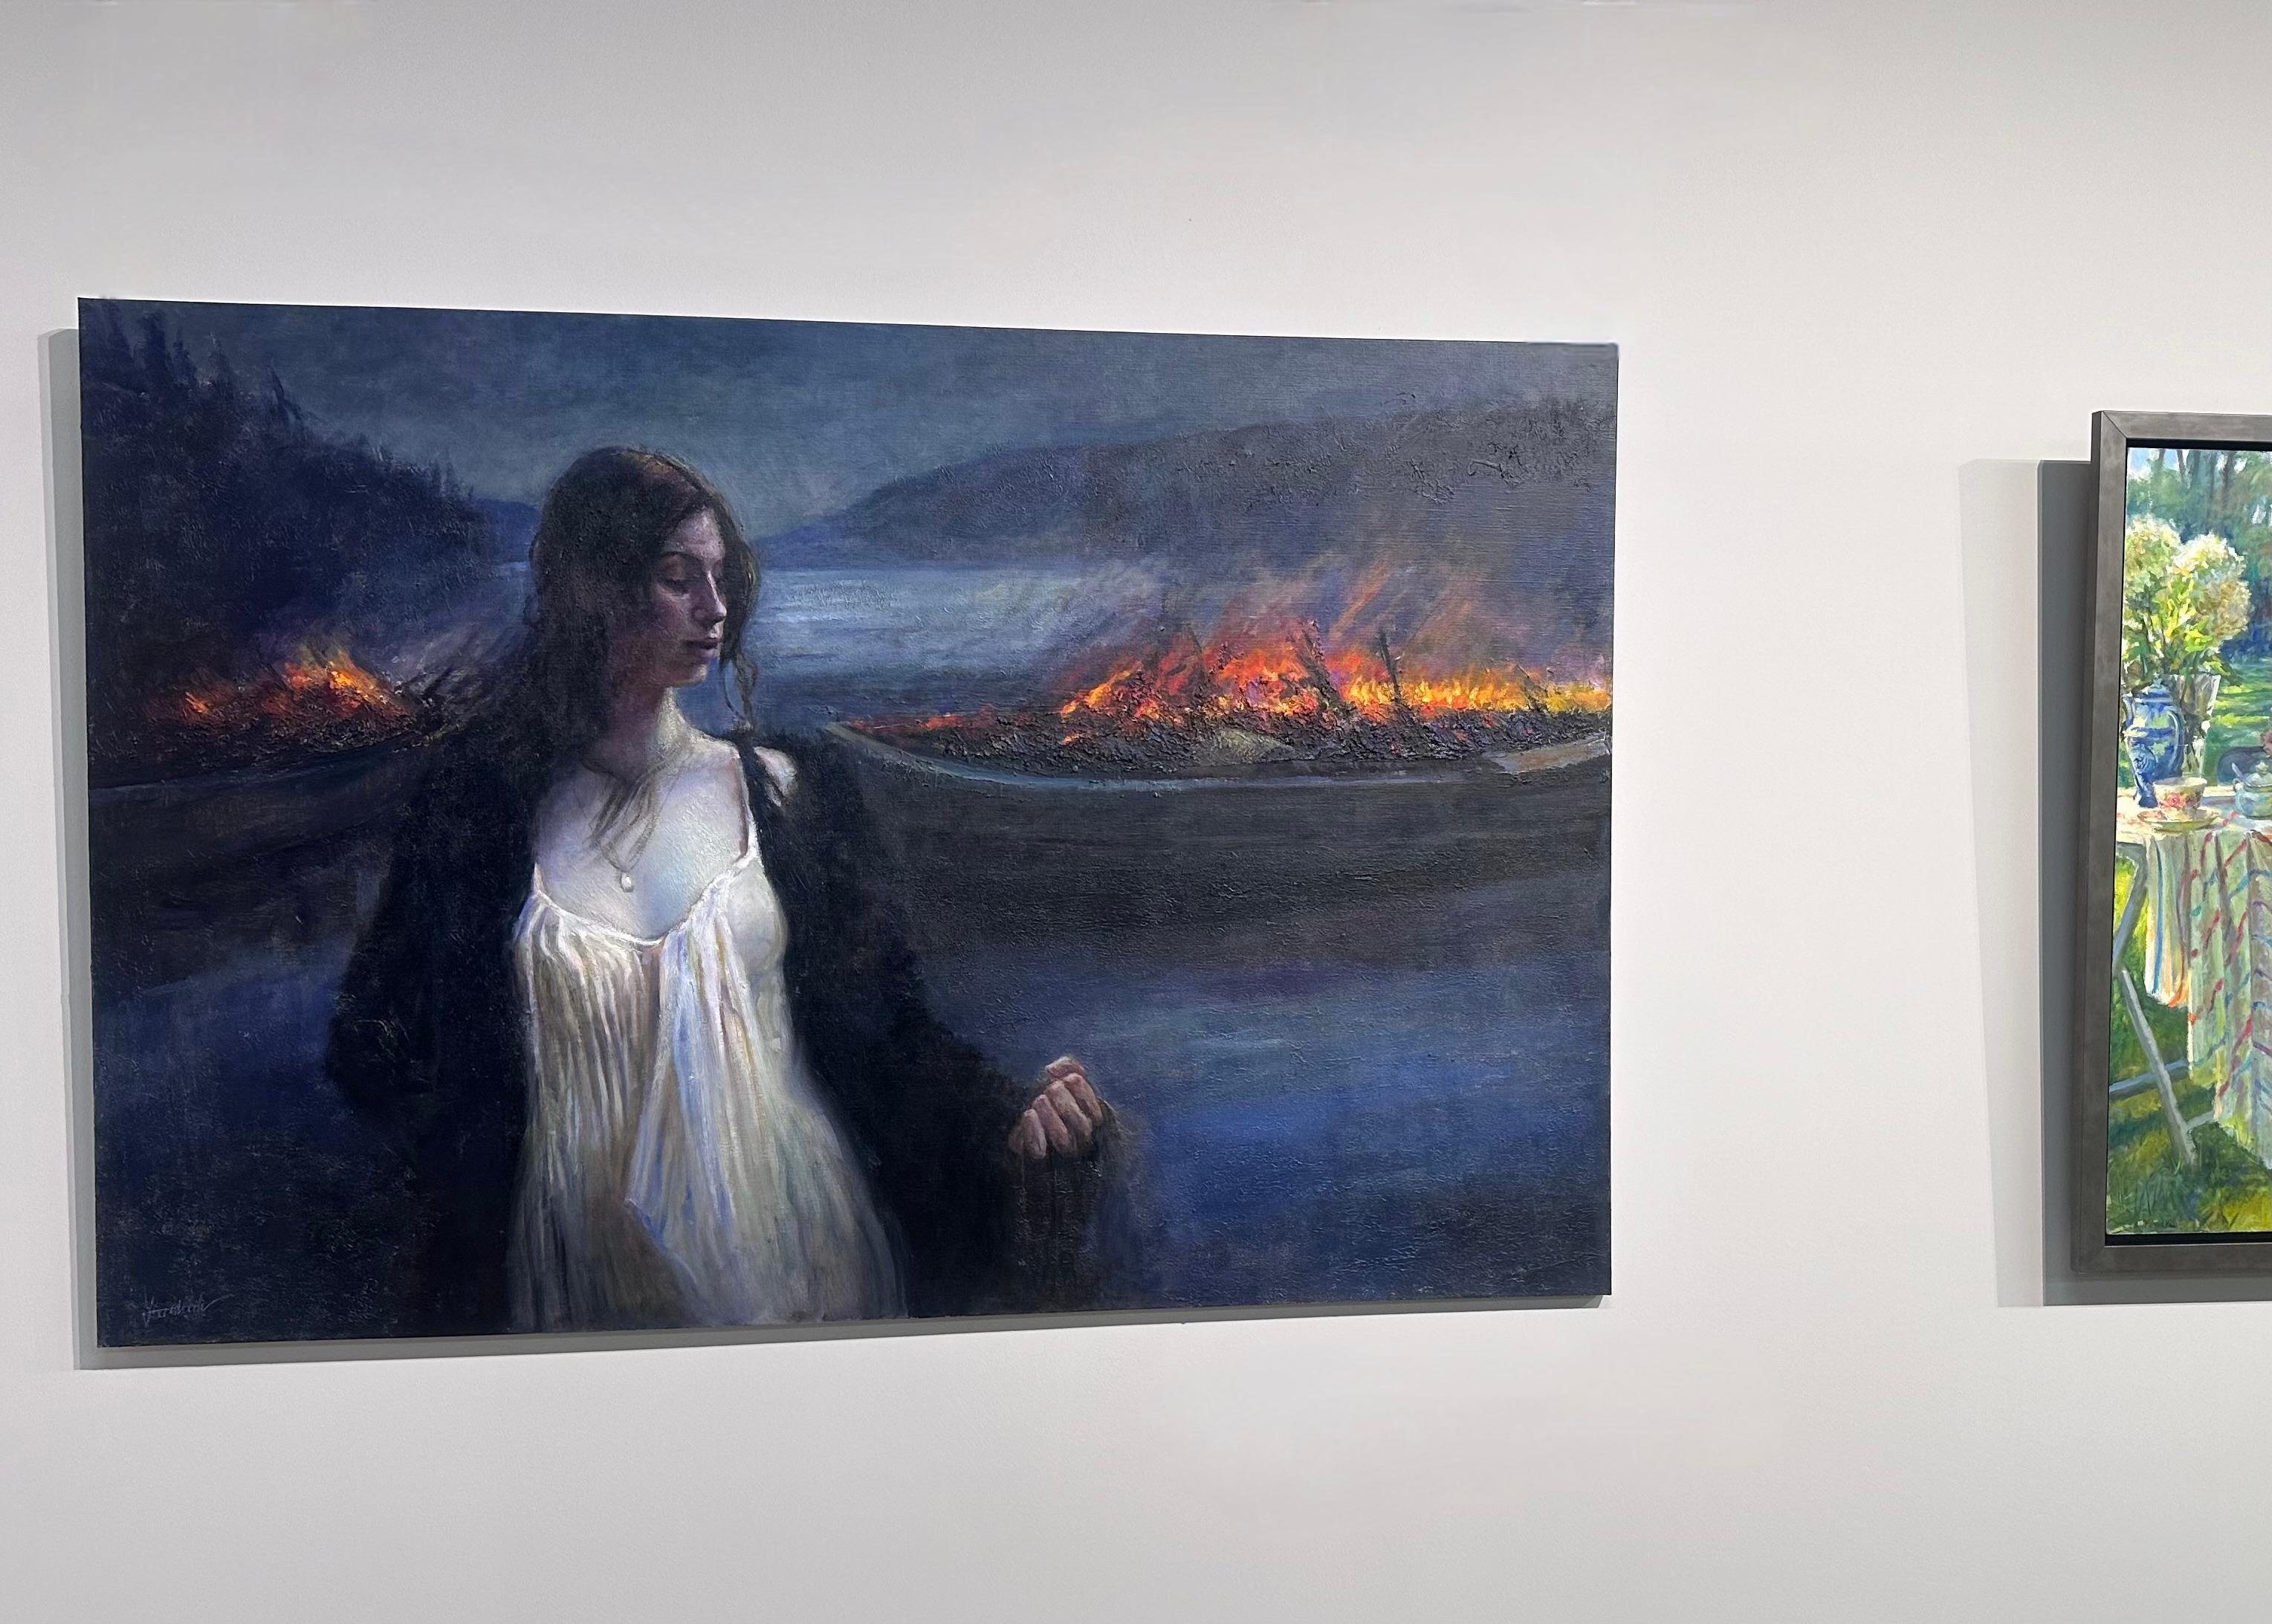 Judith - Peinture hollandaise contemporaine du 21e siècle représentant la force féminine - Painting de Yvonne Heemskerk